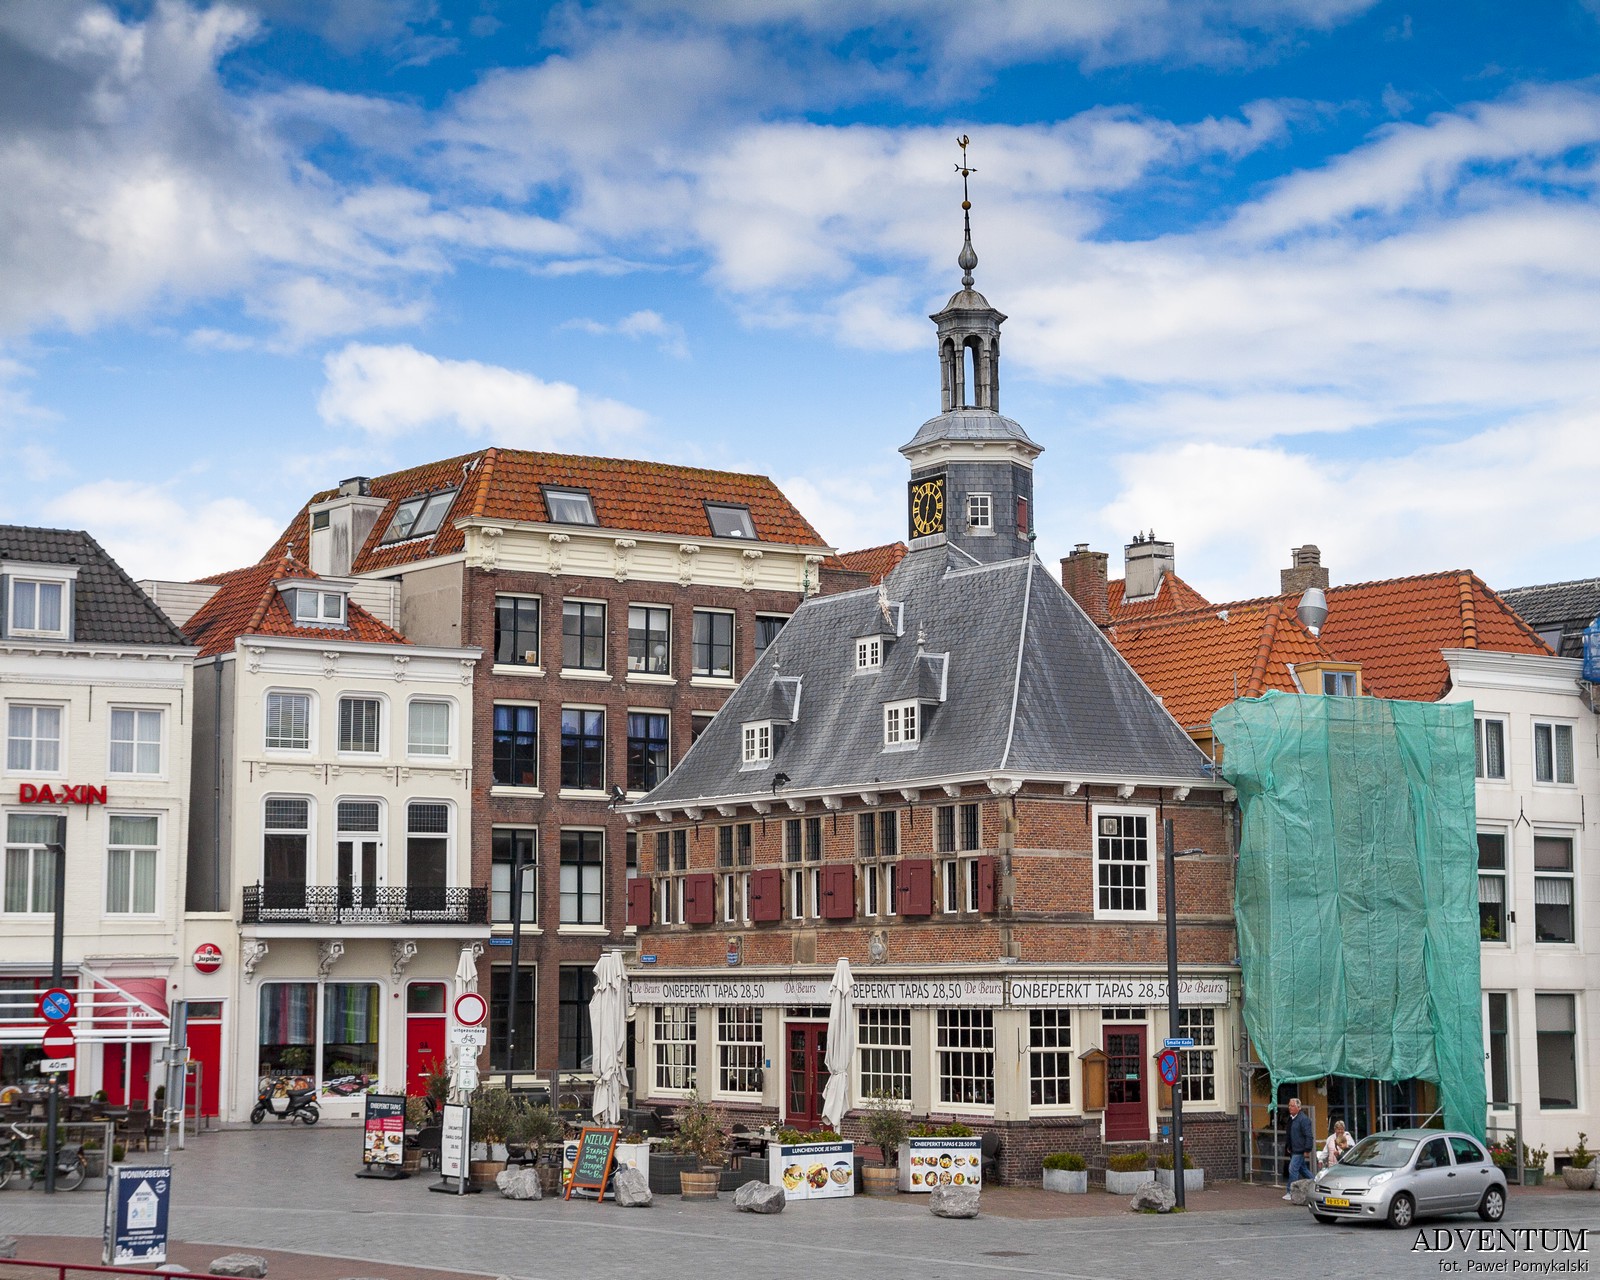 Holandia Vlissingen Atrakcje Zwiedzanie co Zobaczyć Amsterdam Rotterdam Haga Kanały Wiatraki